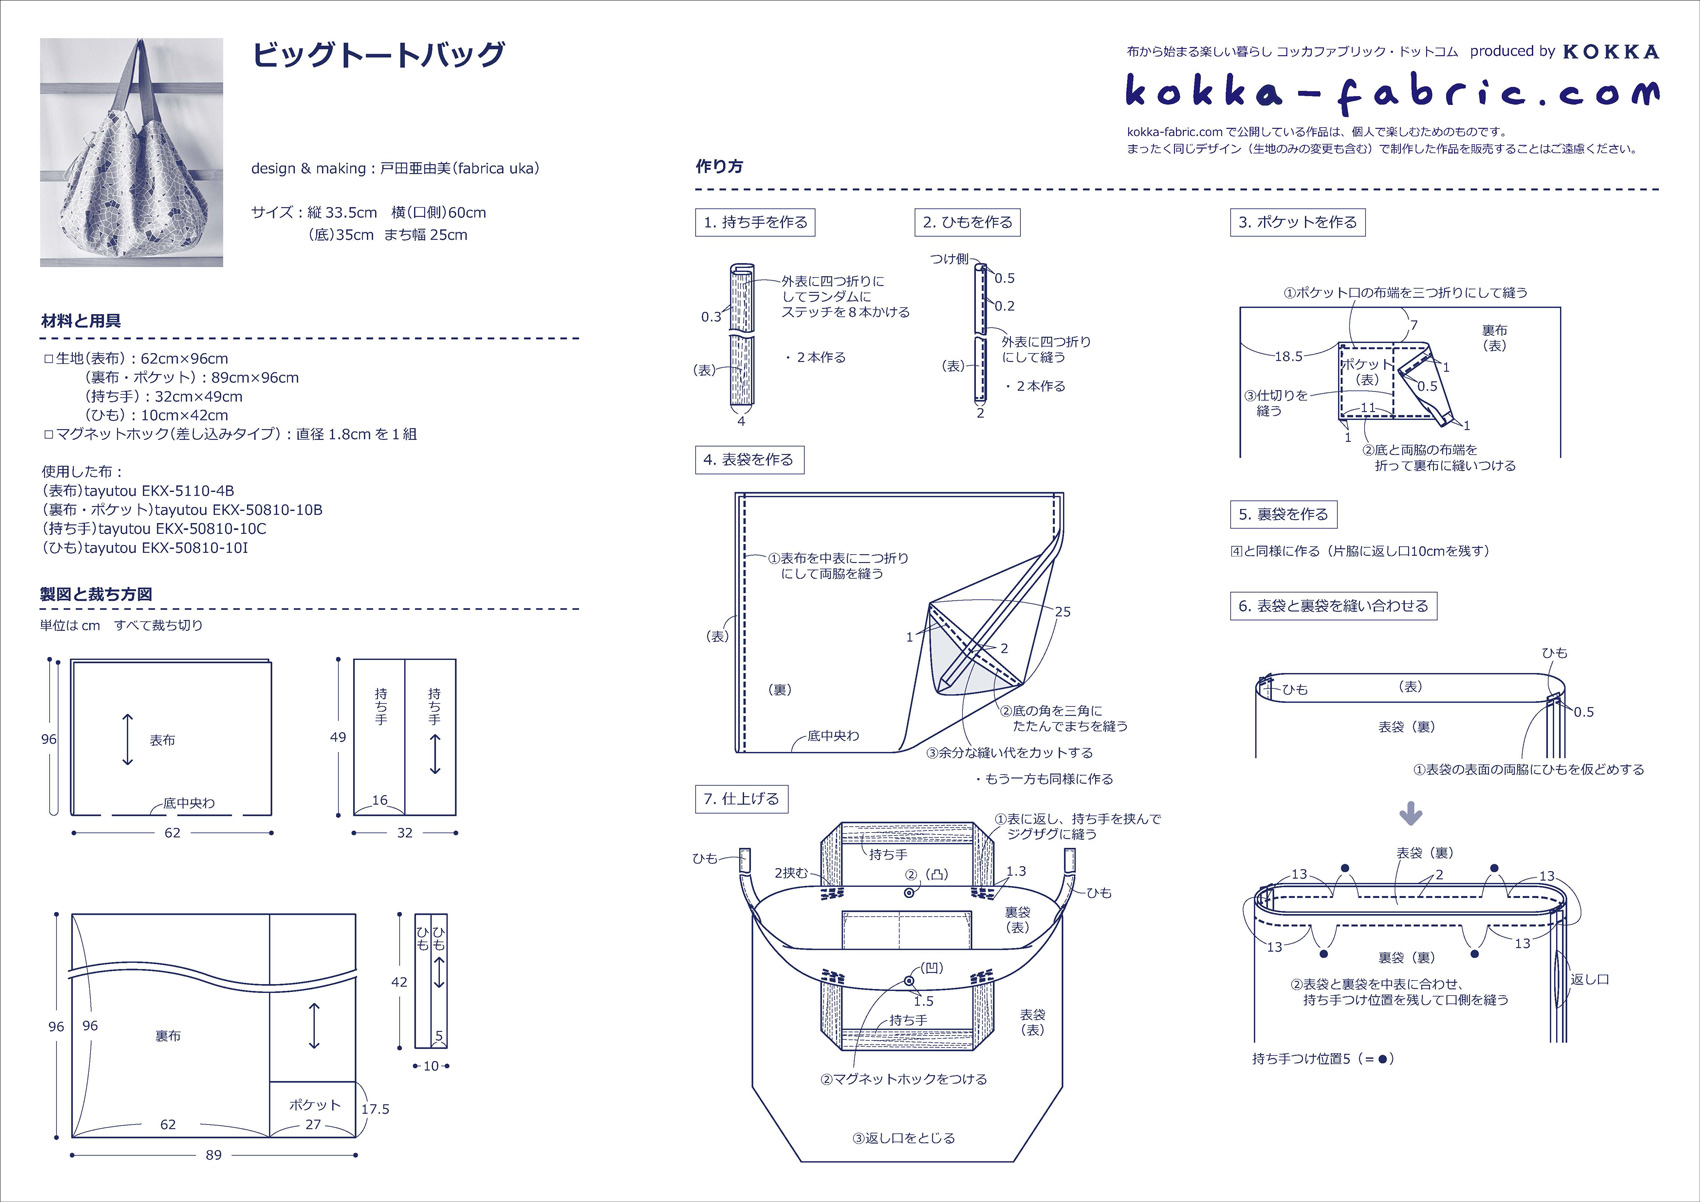 トートバッグの作り方 コッカファブリック ドットコム 布から始まる楽しい暮らし Kokka Fabric Com